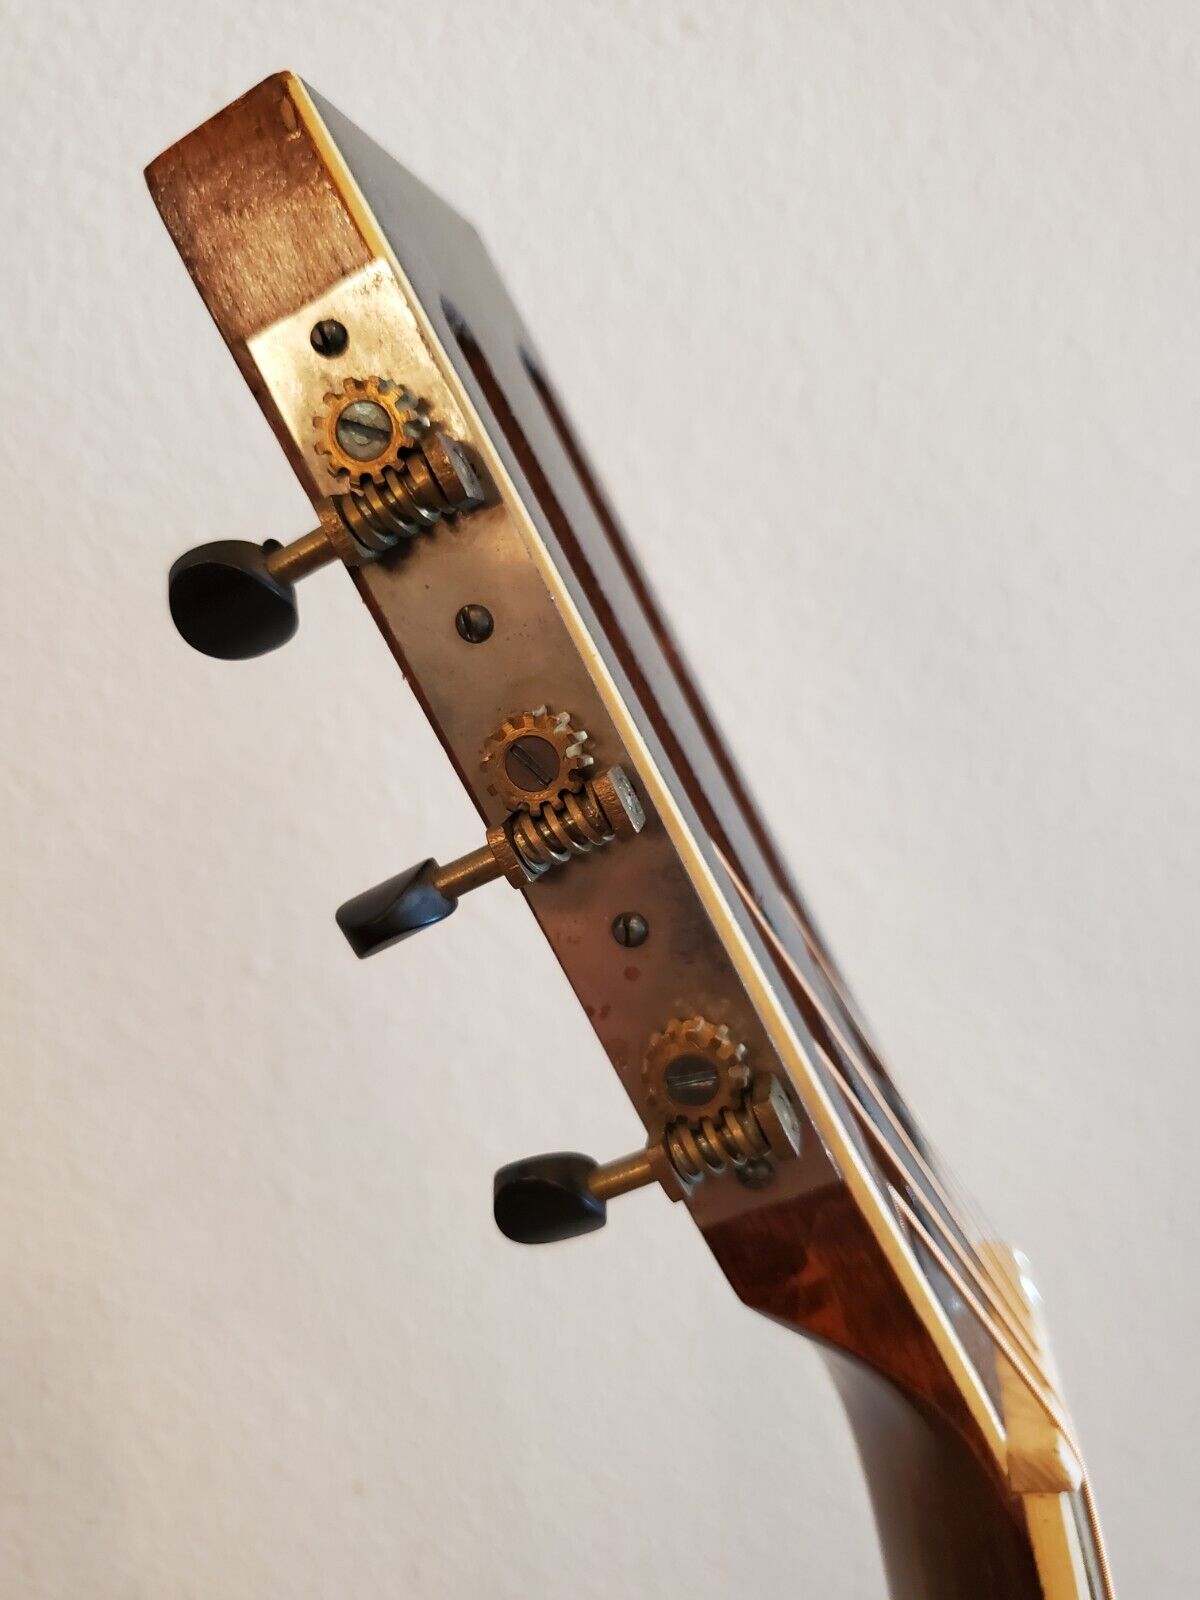 Vintage 1930s Regal Parlor Guitar – Lyon & Healy Quality Built 11